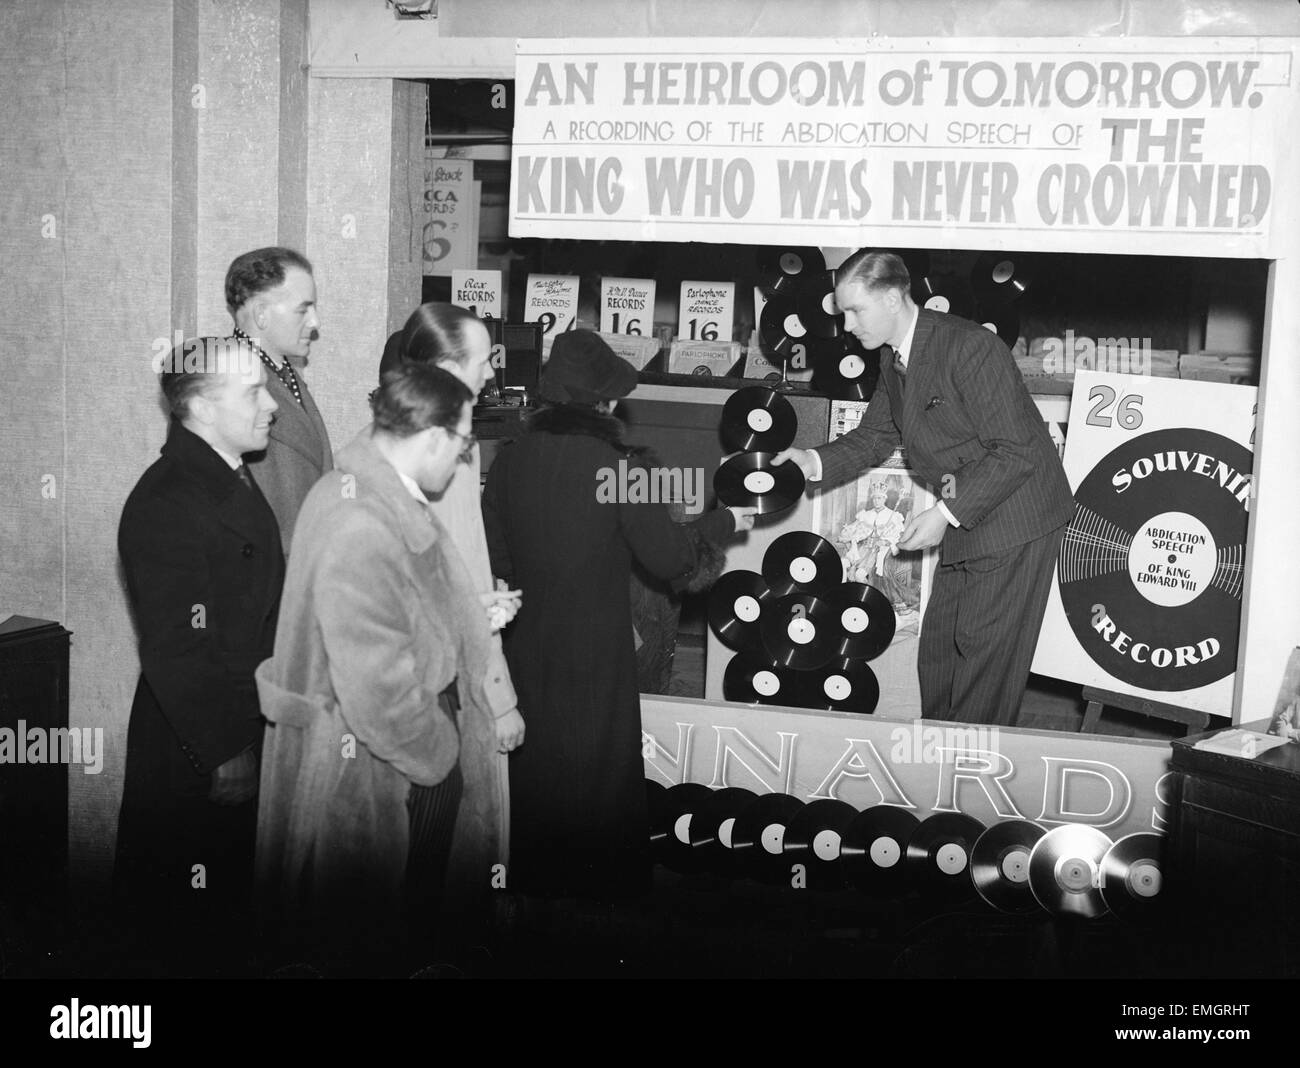 King Edward VIII abdicazione crisi Dicembre 1936. La gente in coda fino a comprare il grammofono record del discorso di Abdicazione del re. Foto Stock